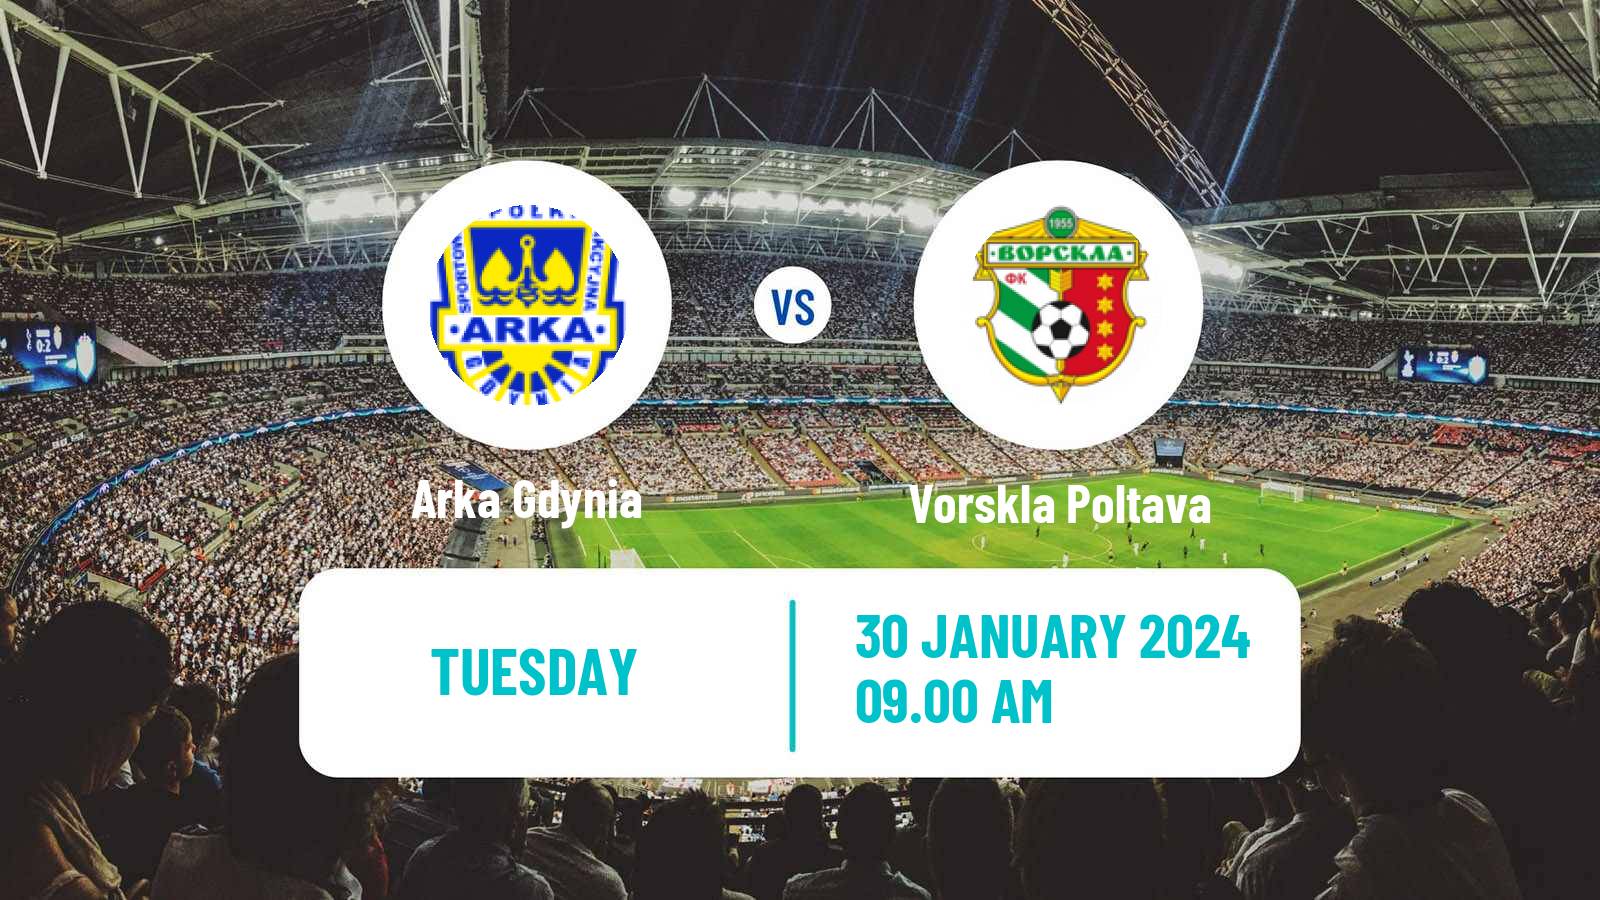 Soccer Club Friendly Arka Gdynia - Vorskla Poltava